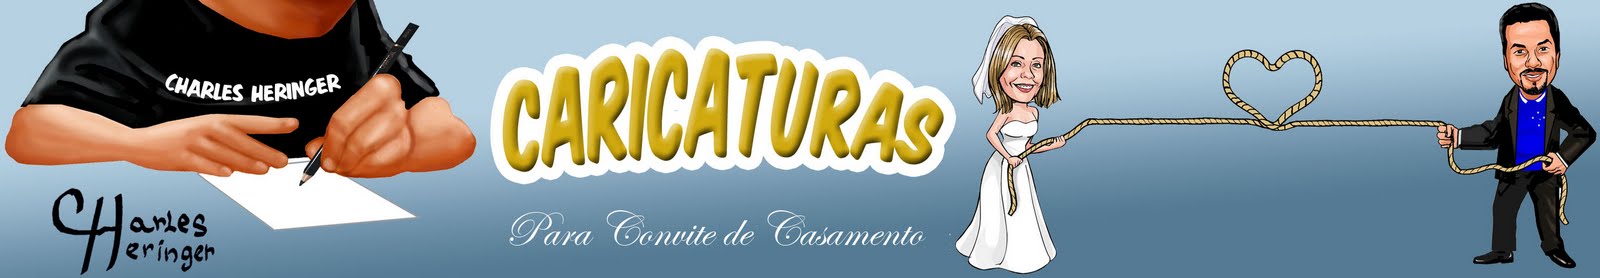 CARICATURAS PARA CONVITE DE CASAMENTO